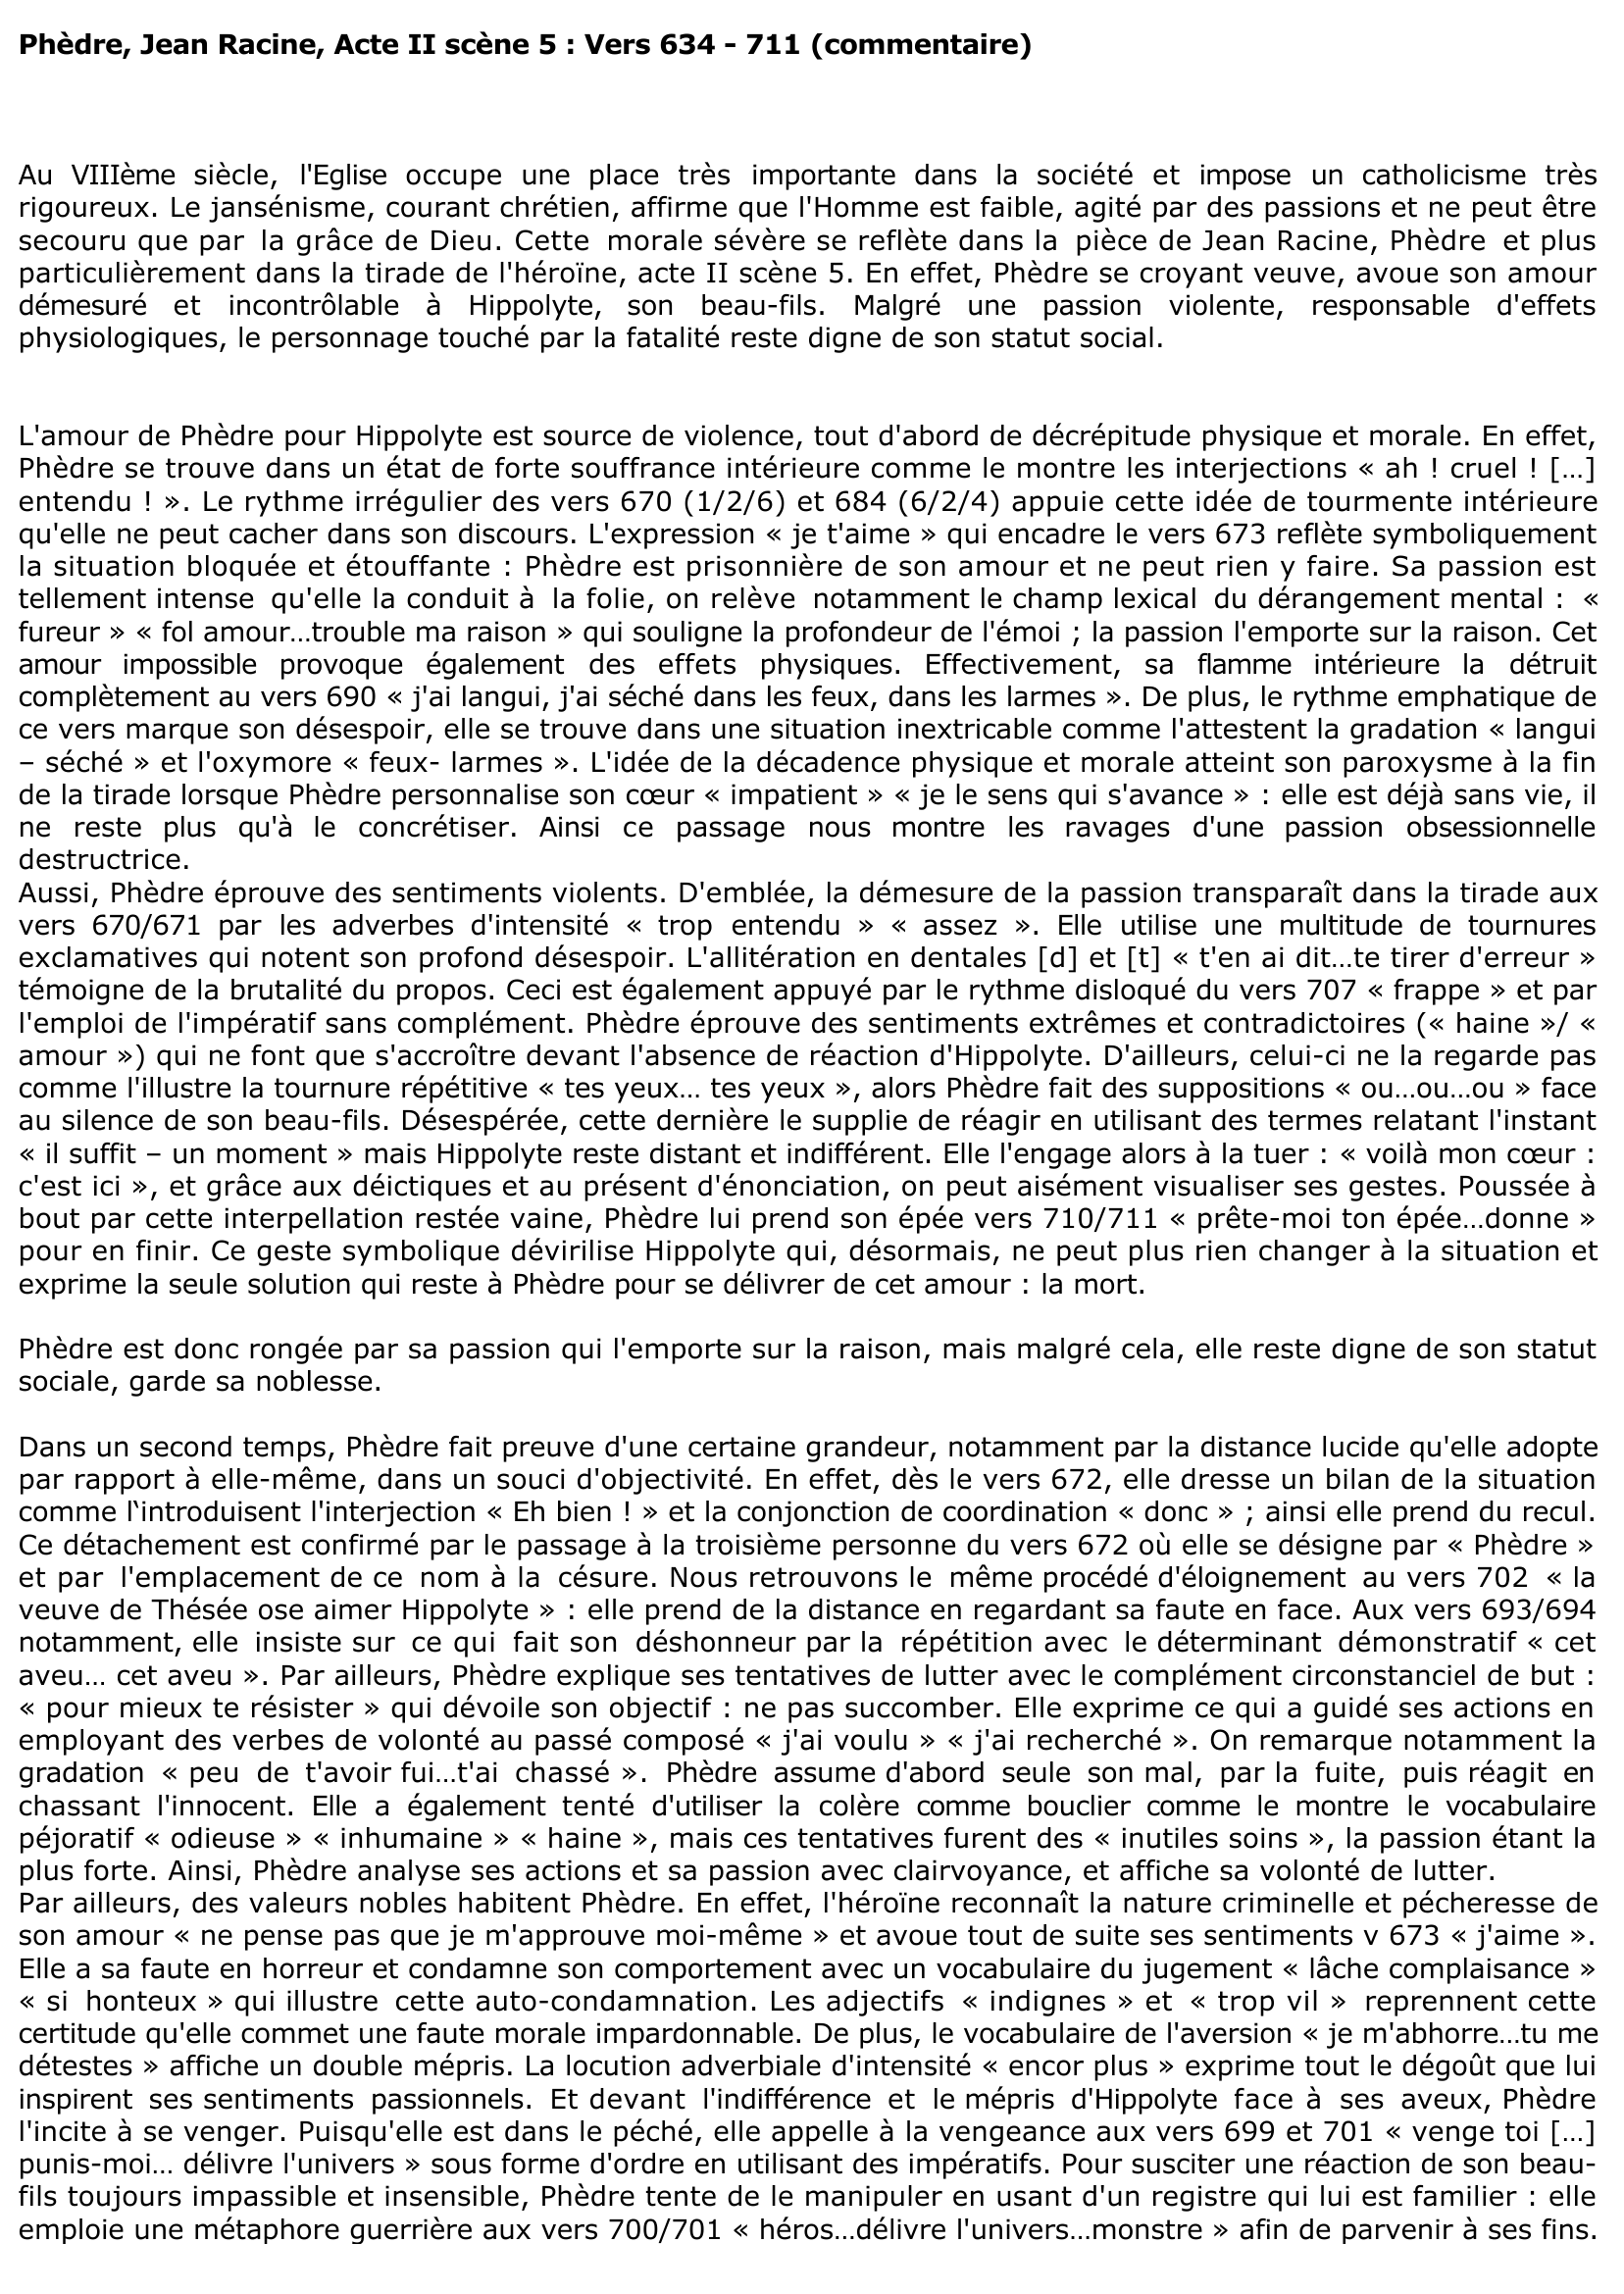 Prévisualisation du document Phèdre, Jean Racine, Acte II scène 5 : Vers 634 - 711 (commentaire)